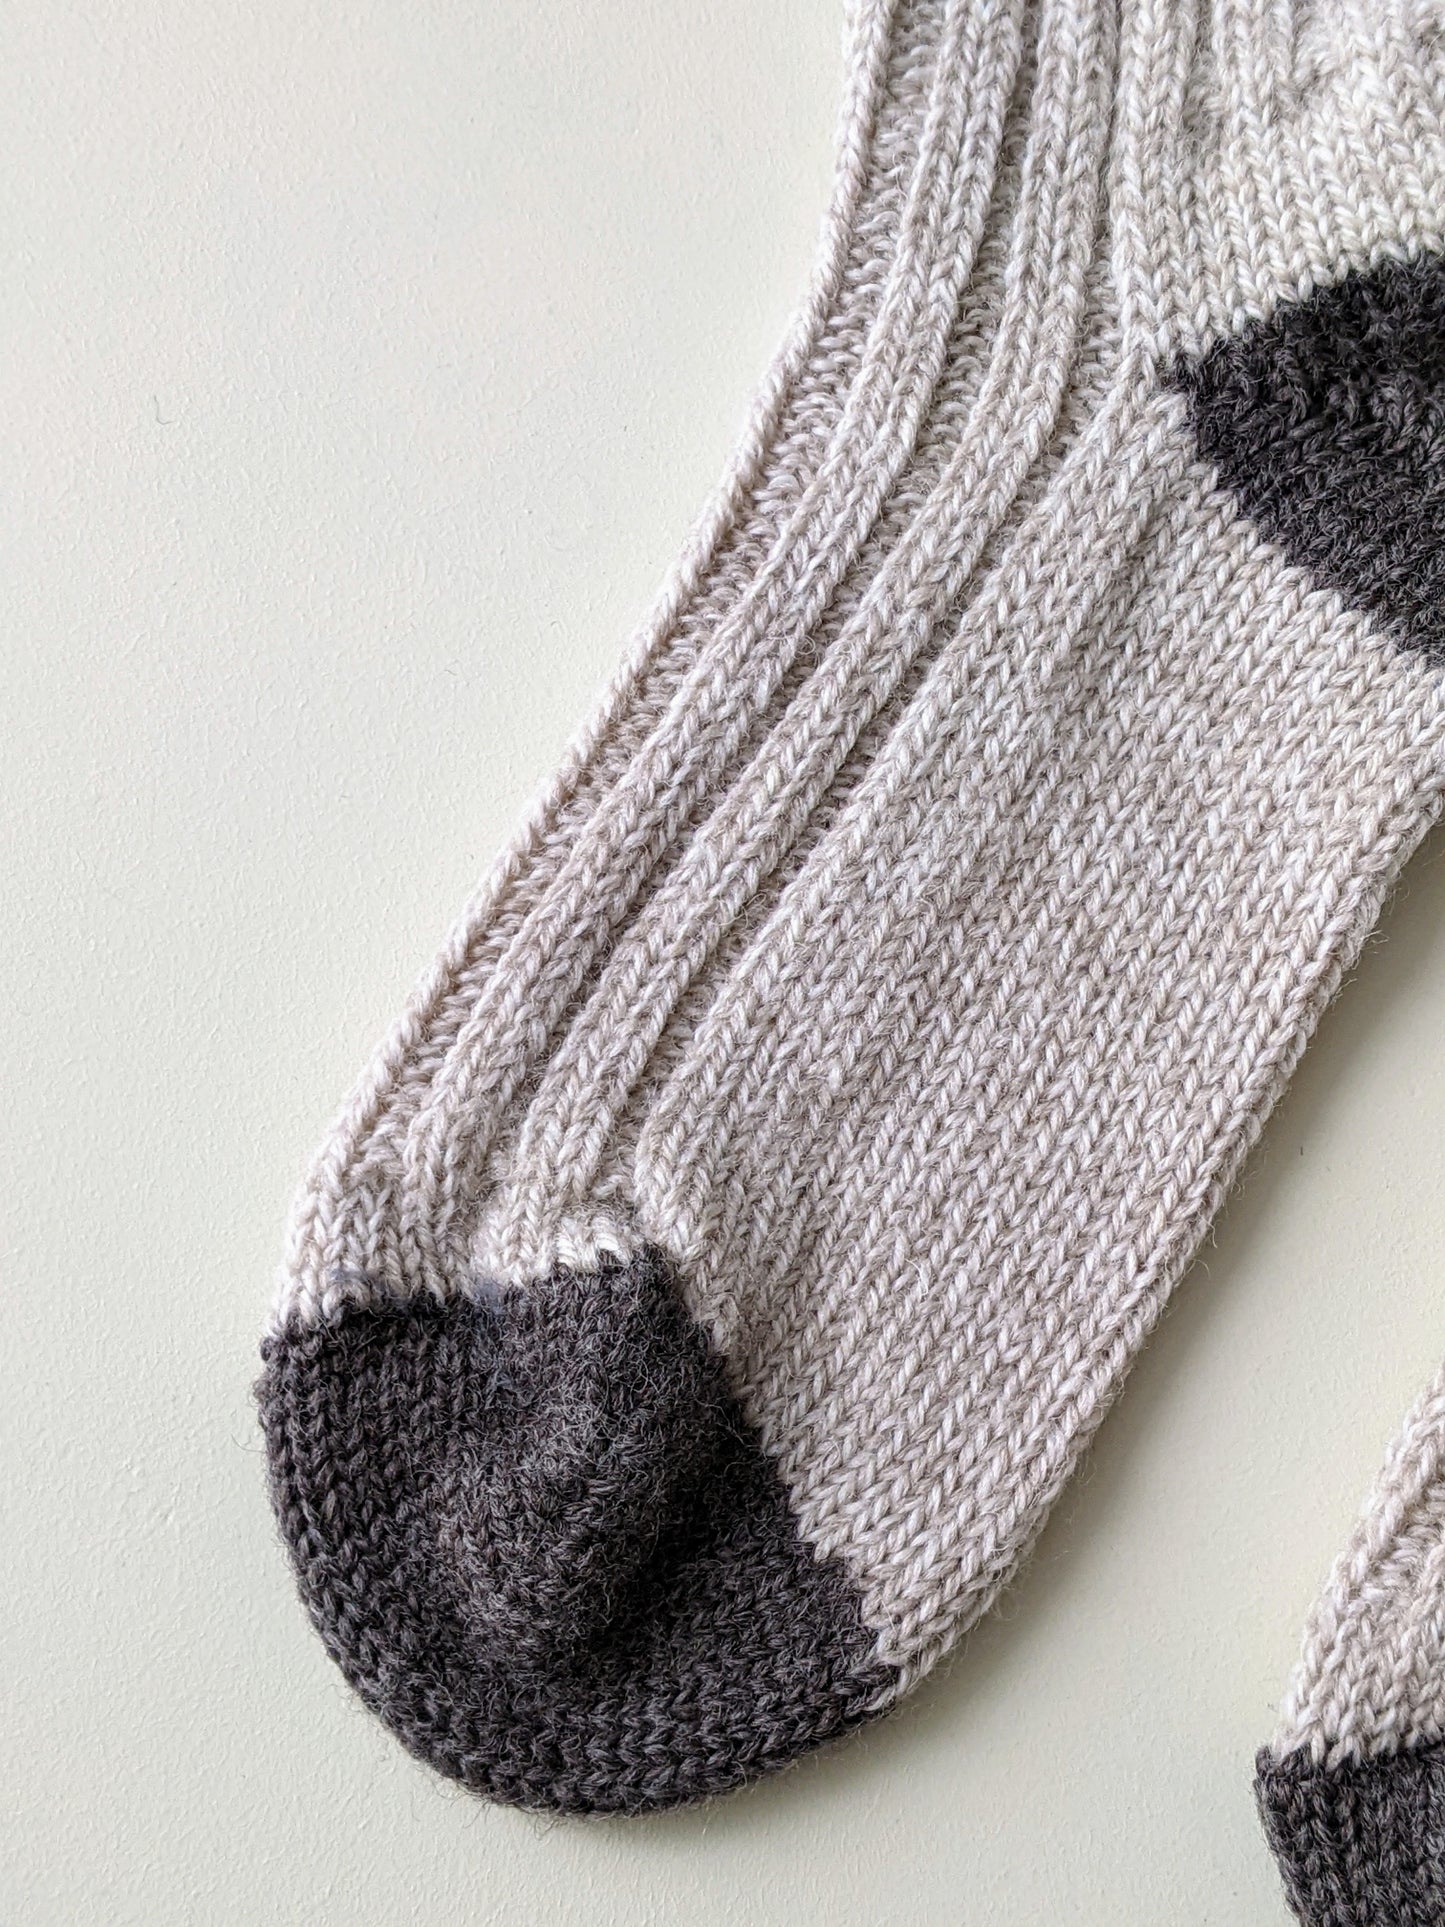 Ladies's Merino Wool Socks- Oatmeal/Brown